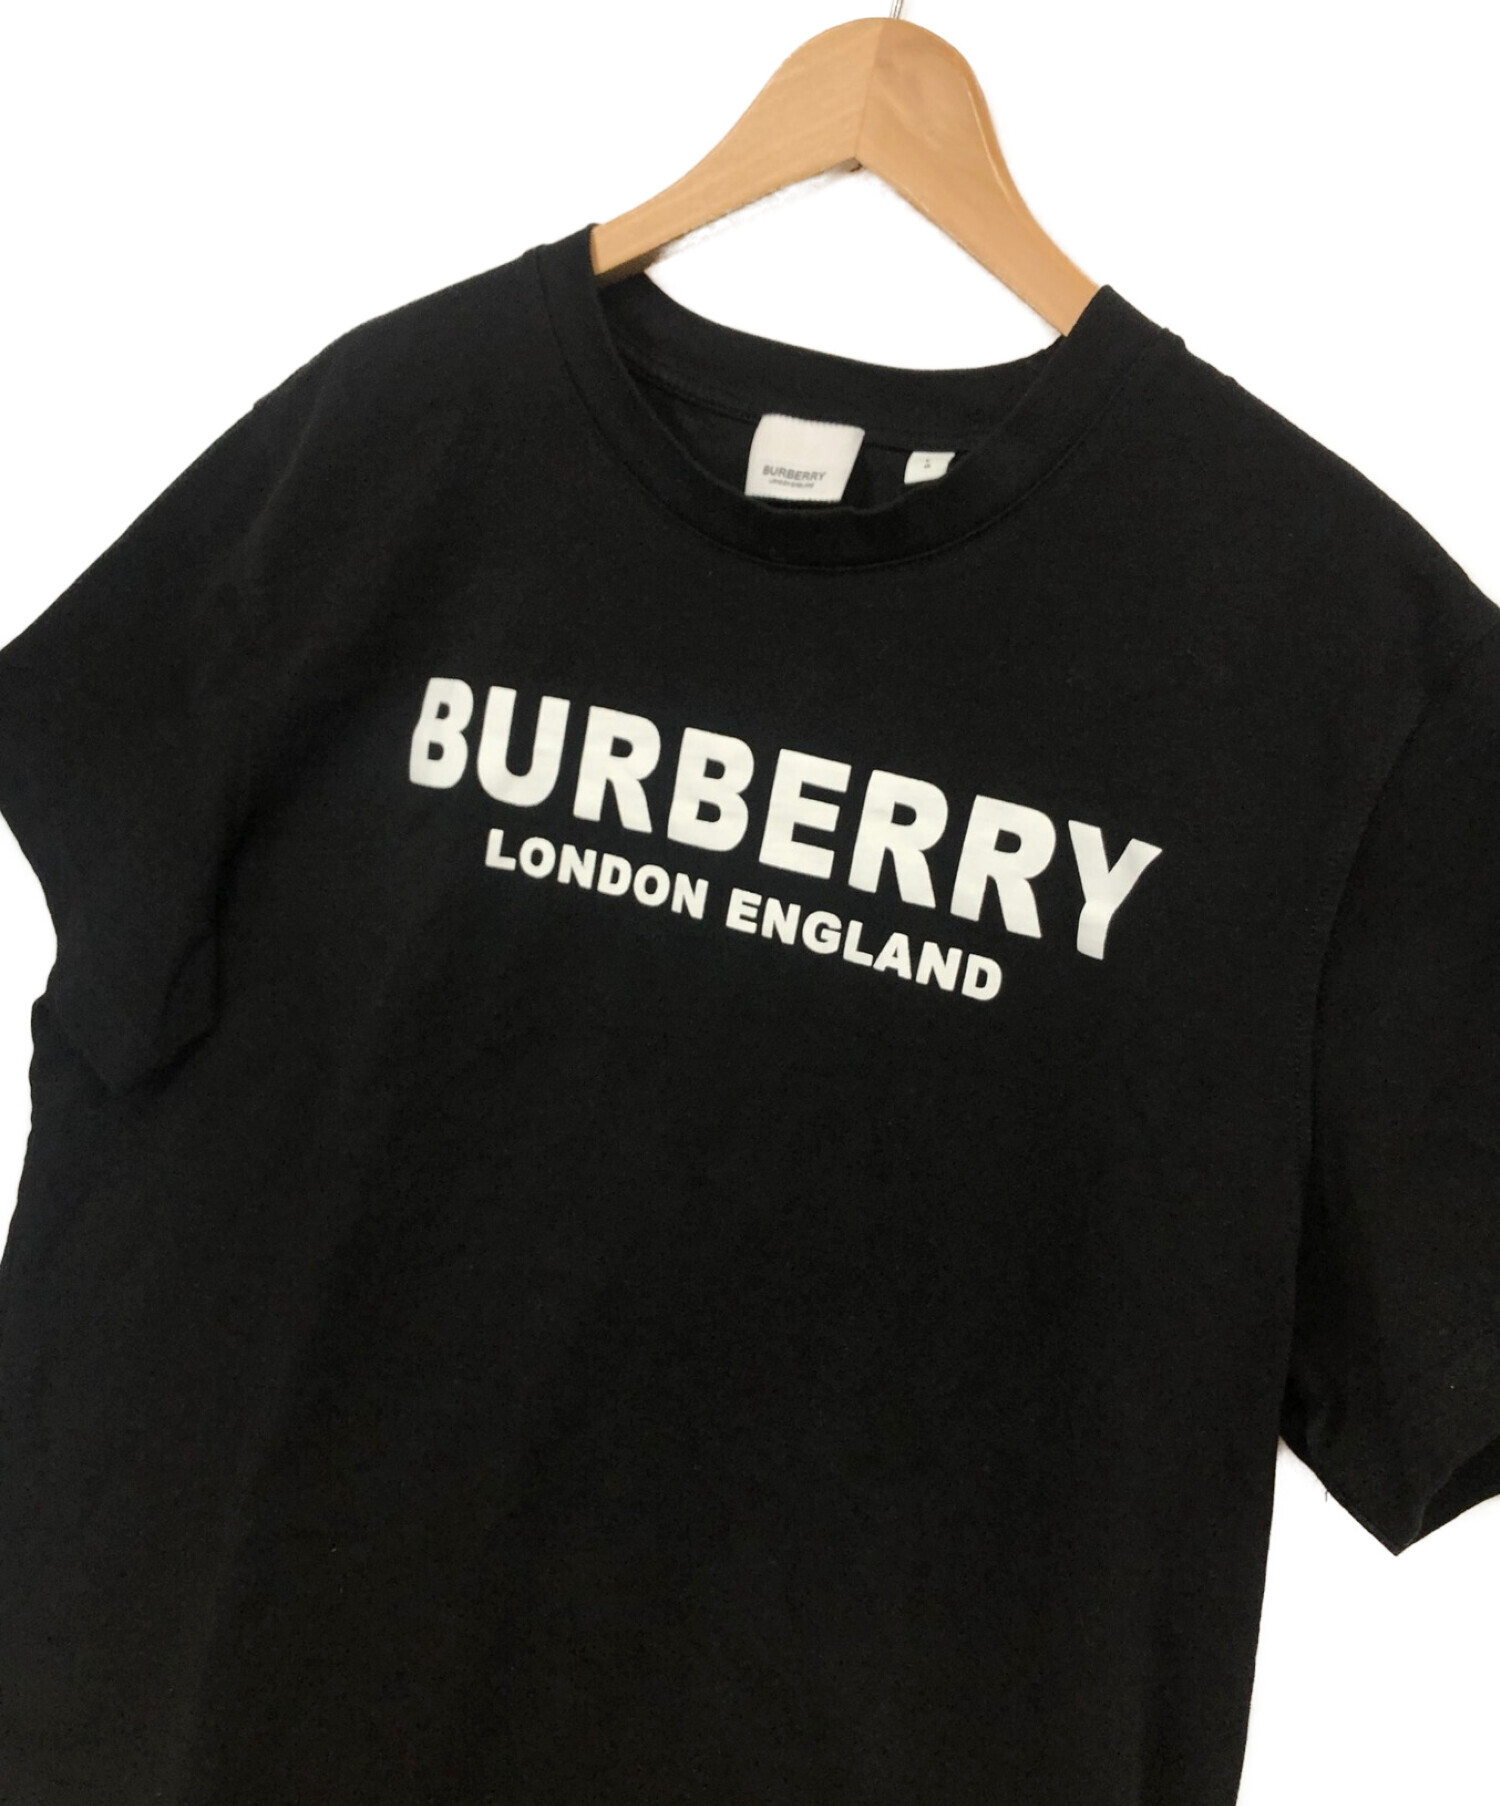 本店 バーバリーロンドン 水色 ワンポイント Tシャツ